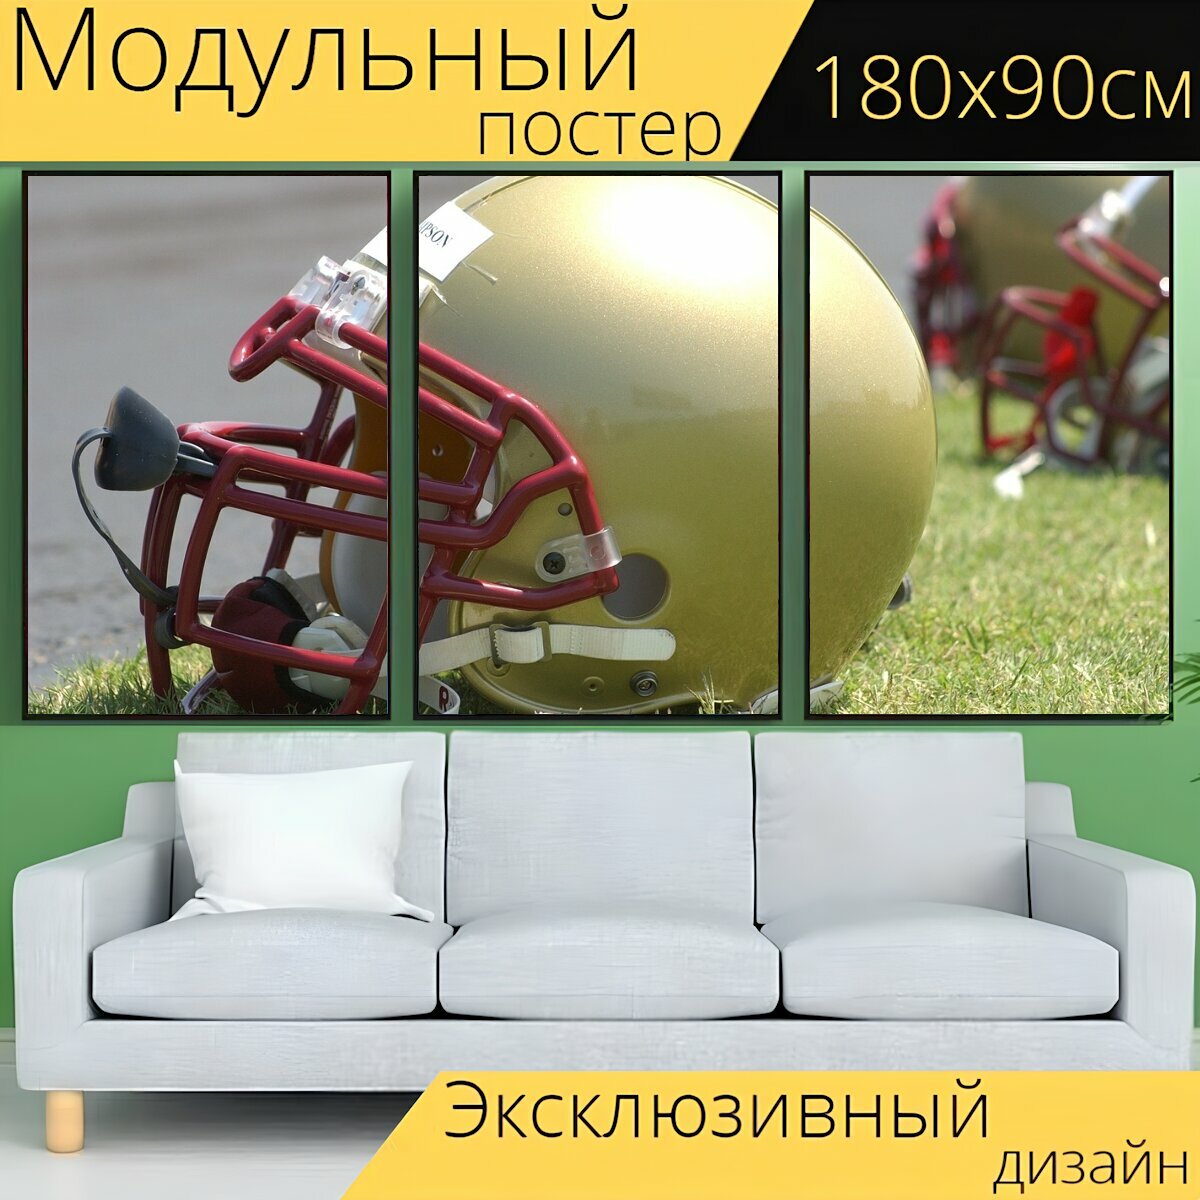 Модульный постер "Футбольный шлем, головной убор, шлем" 180 x 90 см. для интерьера